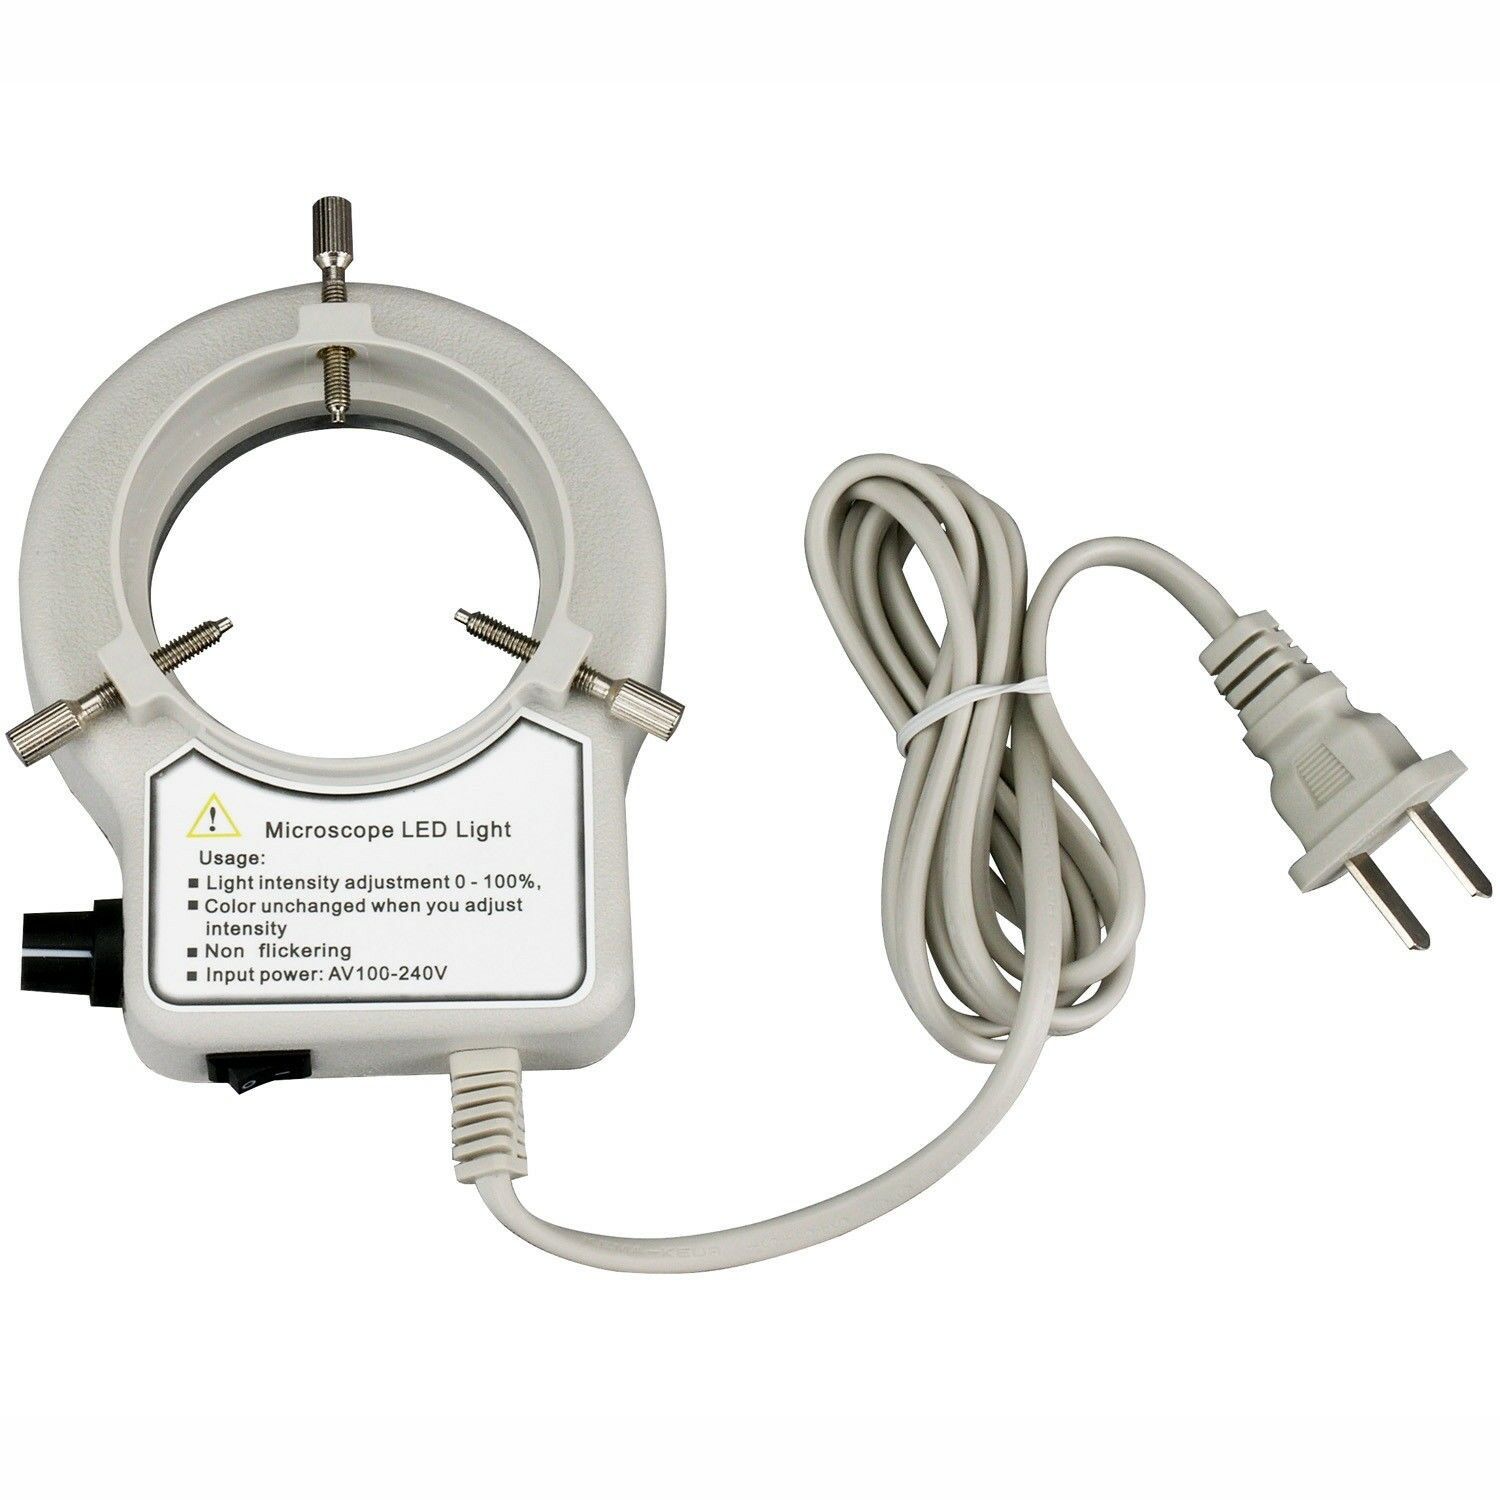 Amscope 56-led Reinforced Microscope Dimmer Ring Light W Ring Adapter 110v-240v